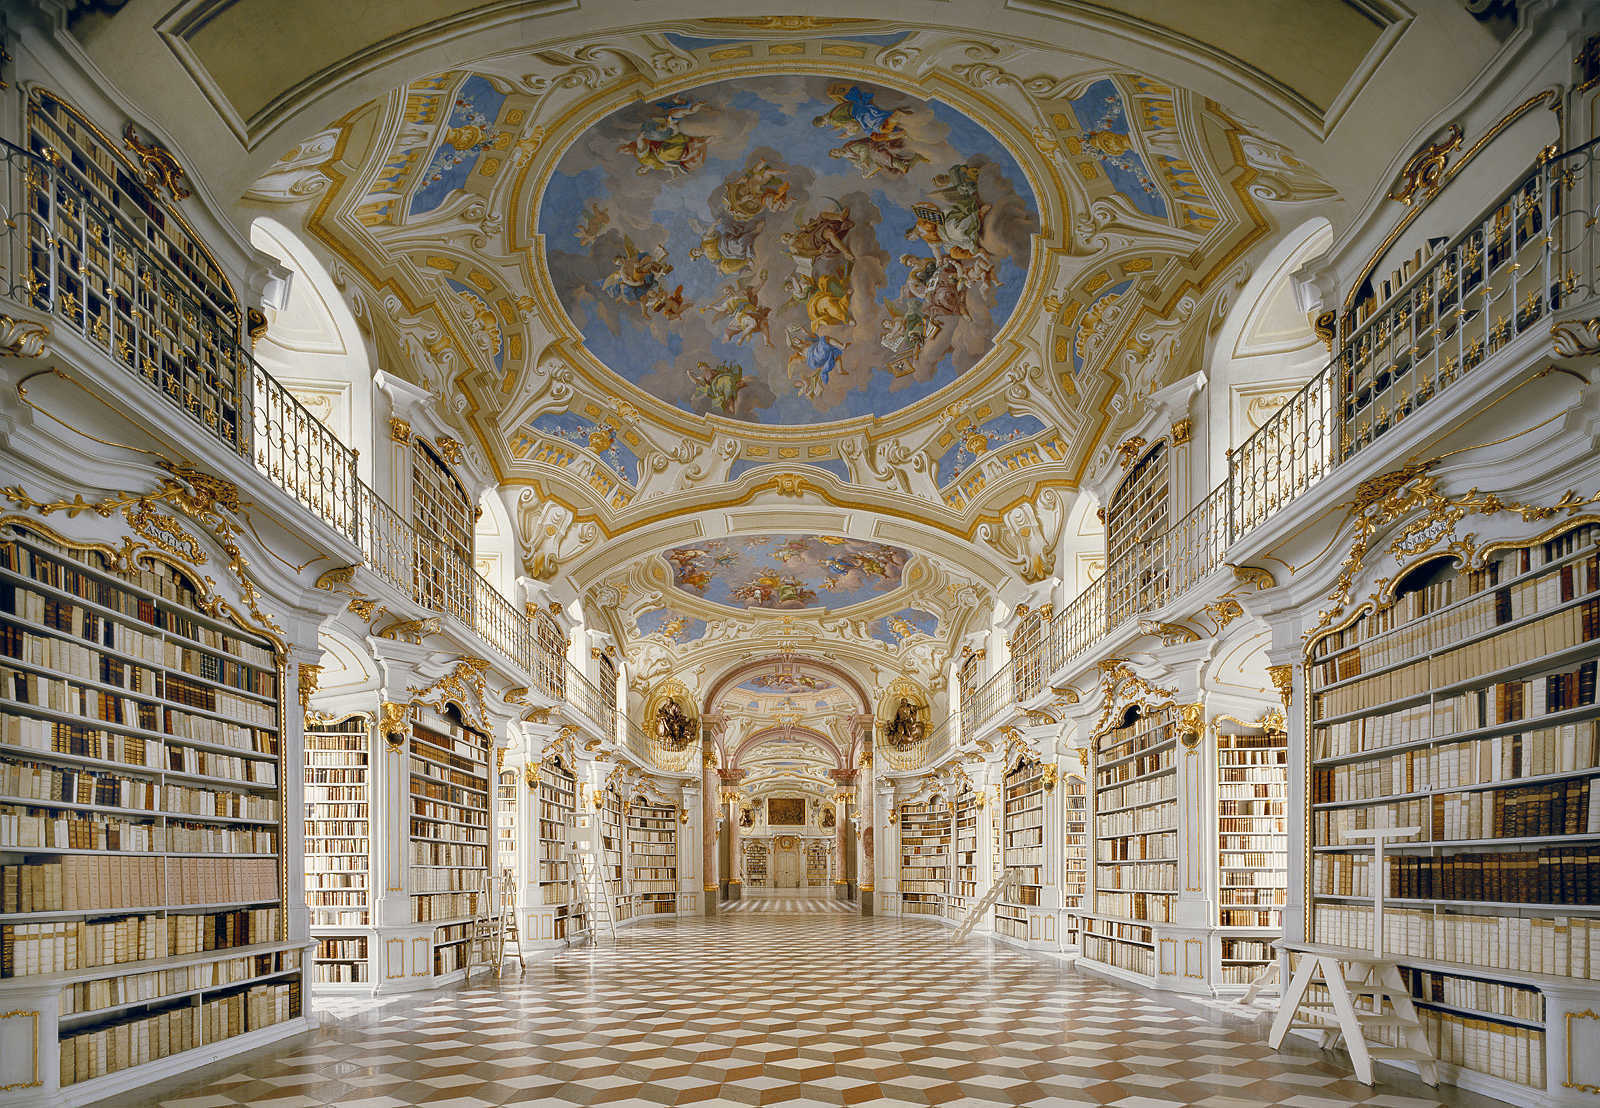 奧地利古老修道院圖書館 (Admont Abbey Library), 奧地利阿德蒙特 (Admont)